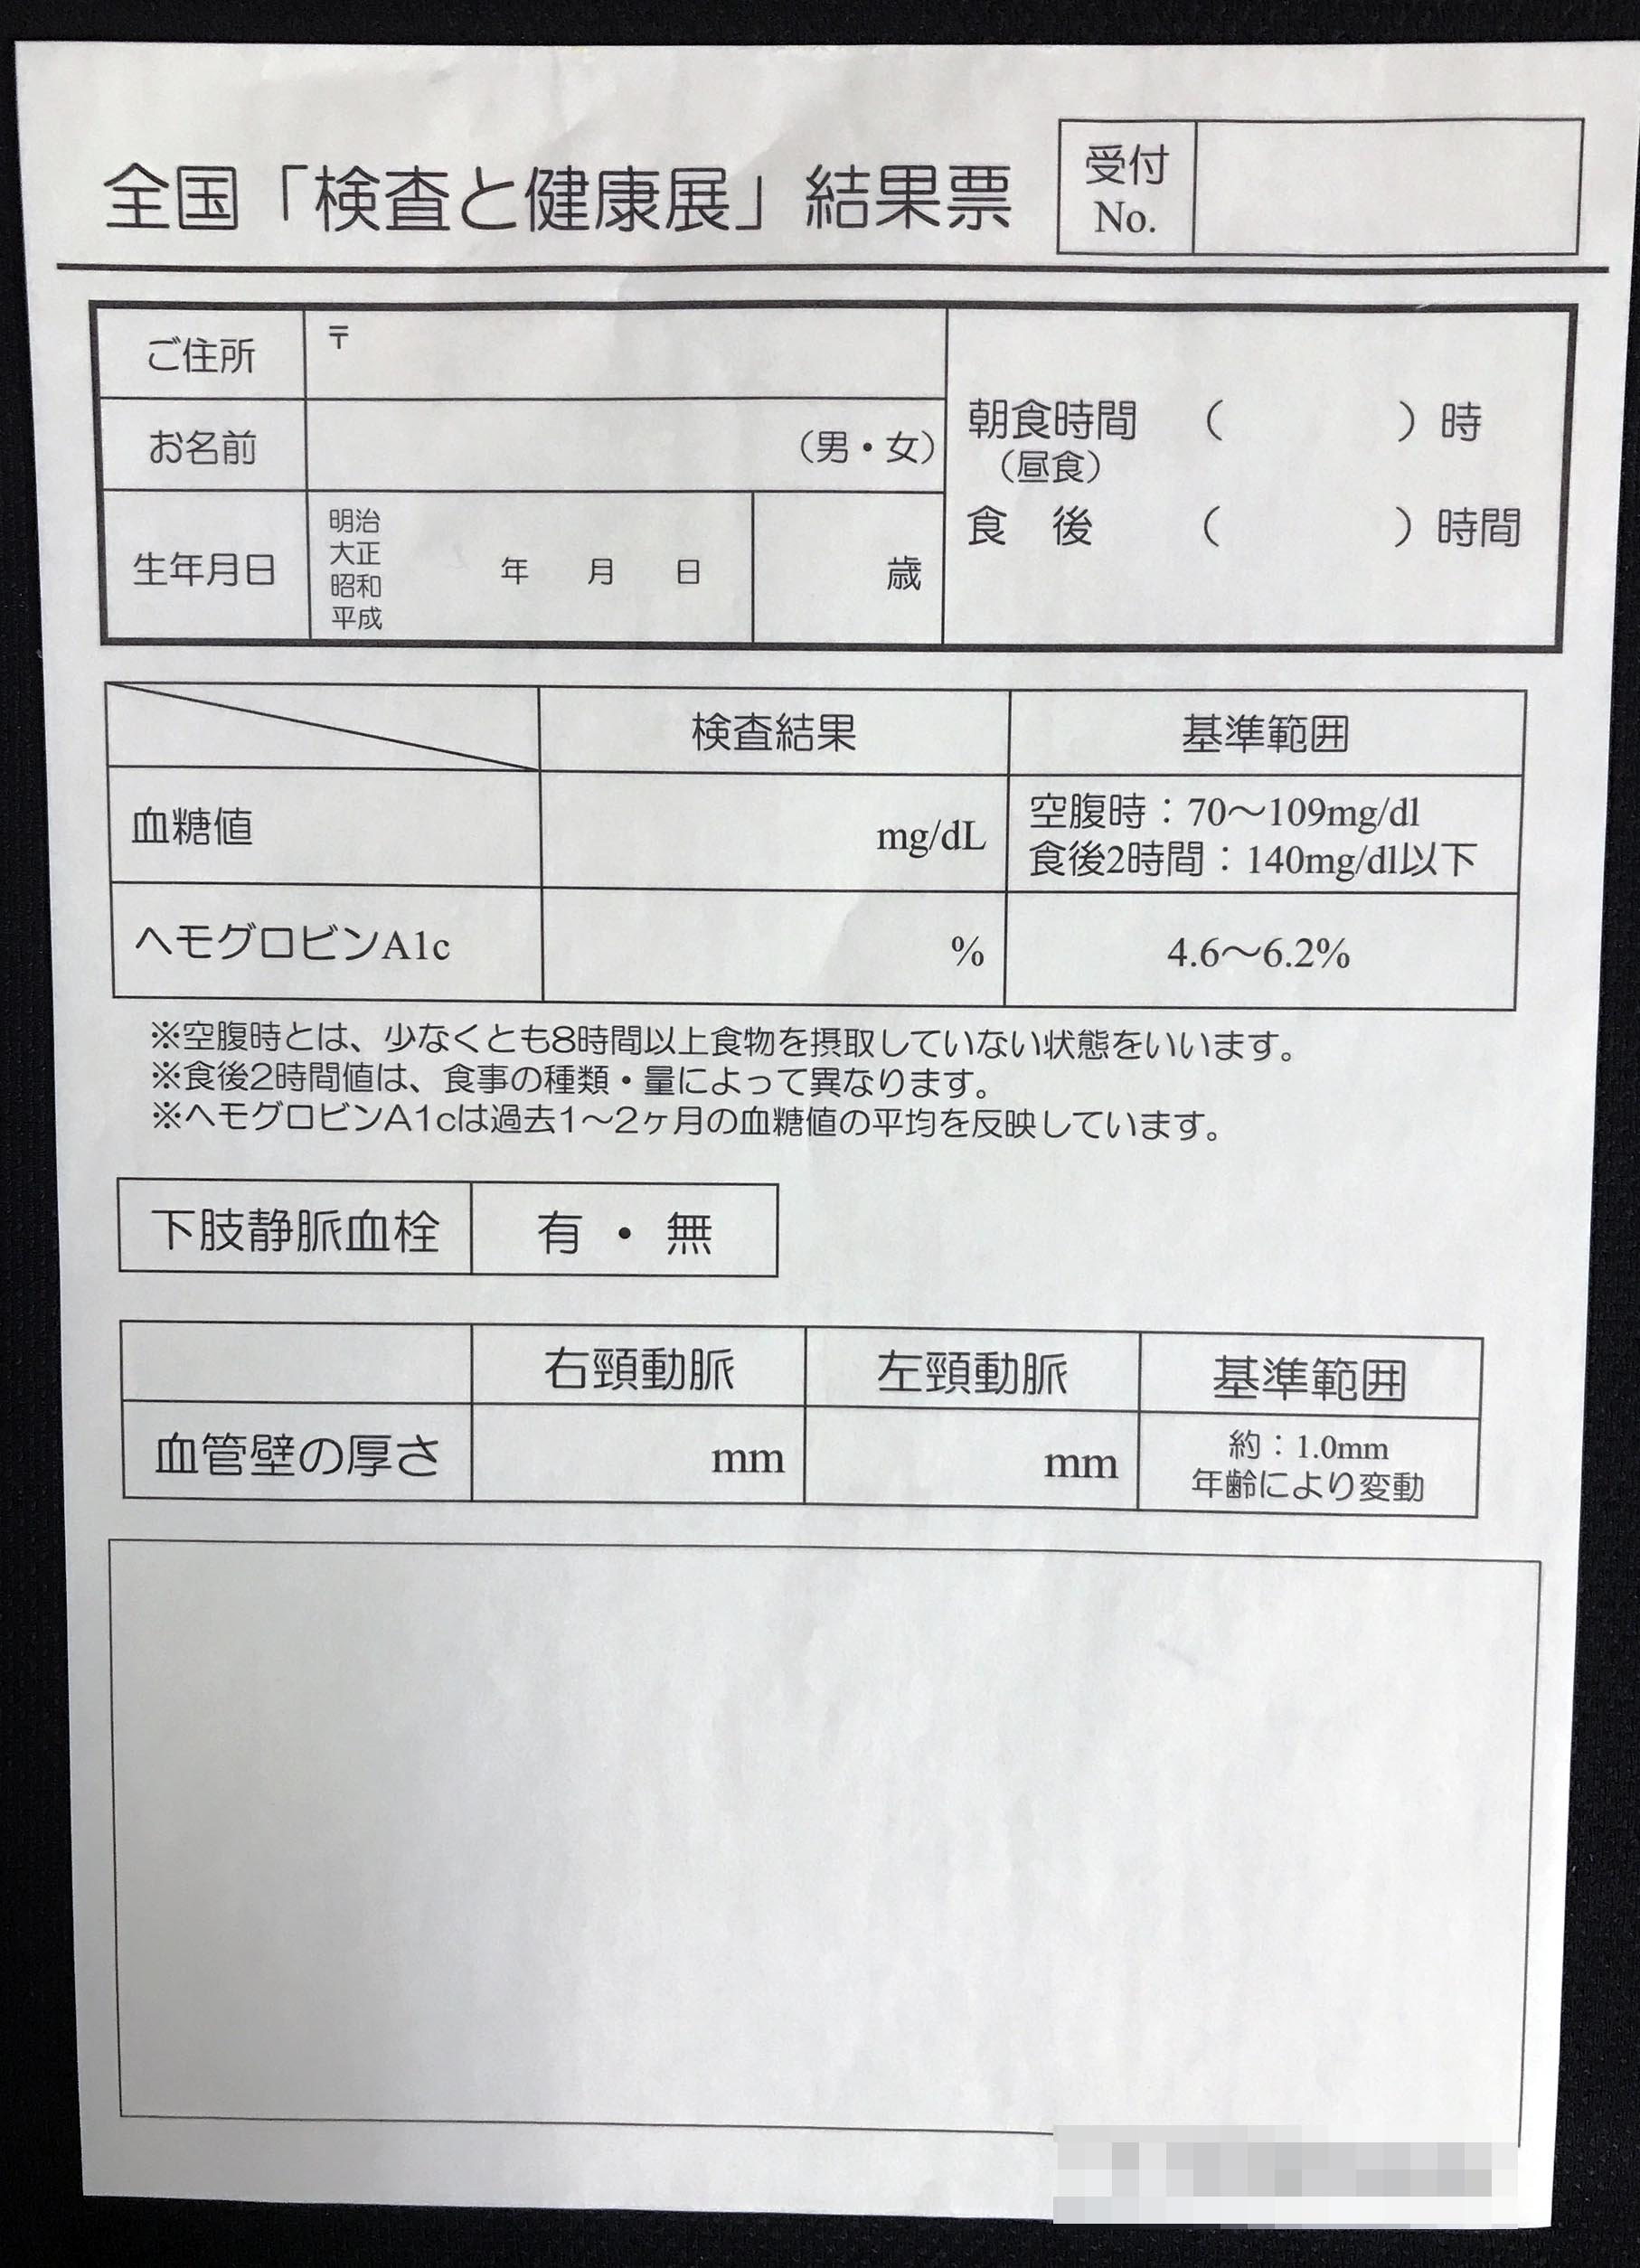 鳥取県　一般社団法人　結果票　(２枚複写)